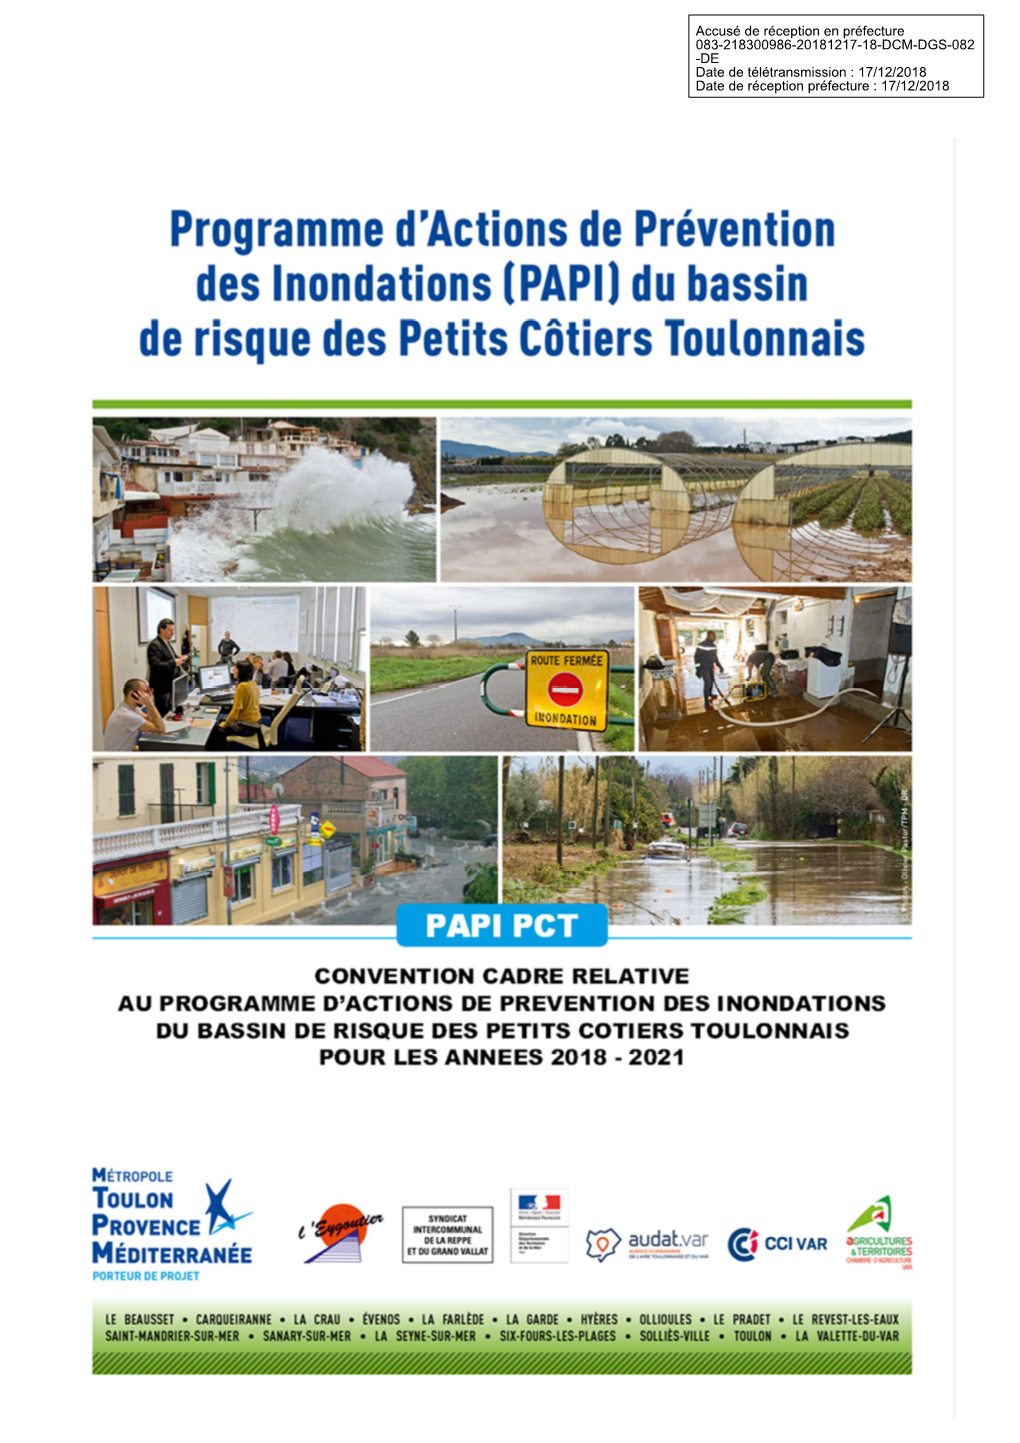 18-Dcm-Dgs-082-Convention-Cadre Relative Au Programme D'actions De Prevention Des Inondations